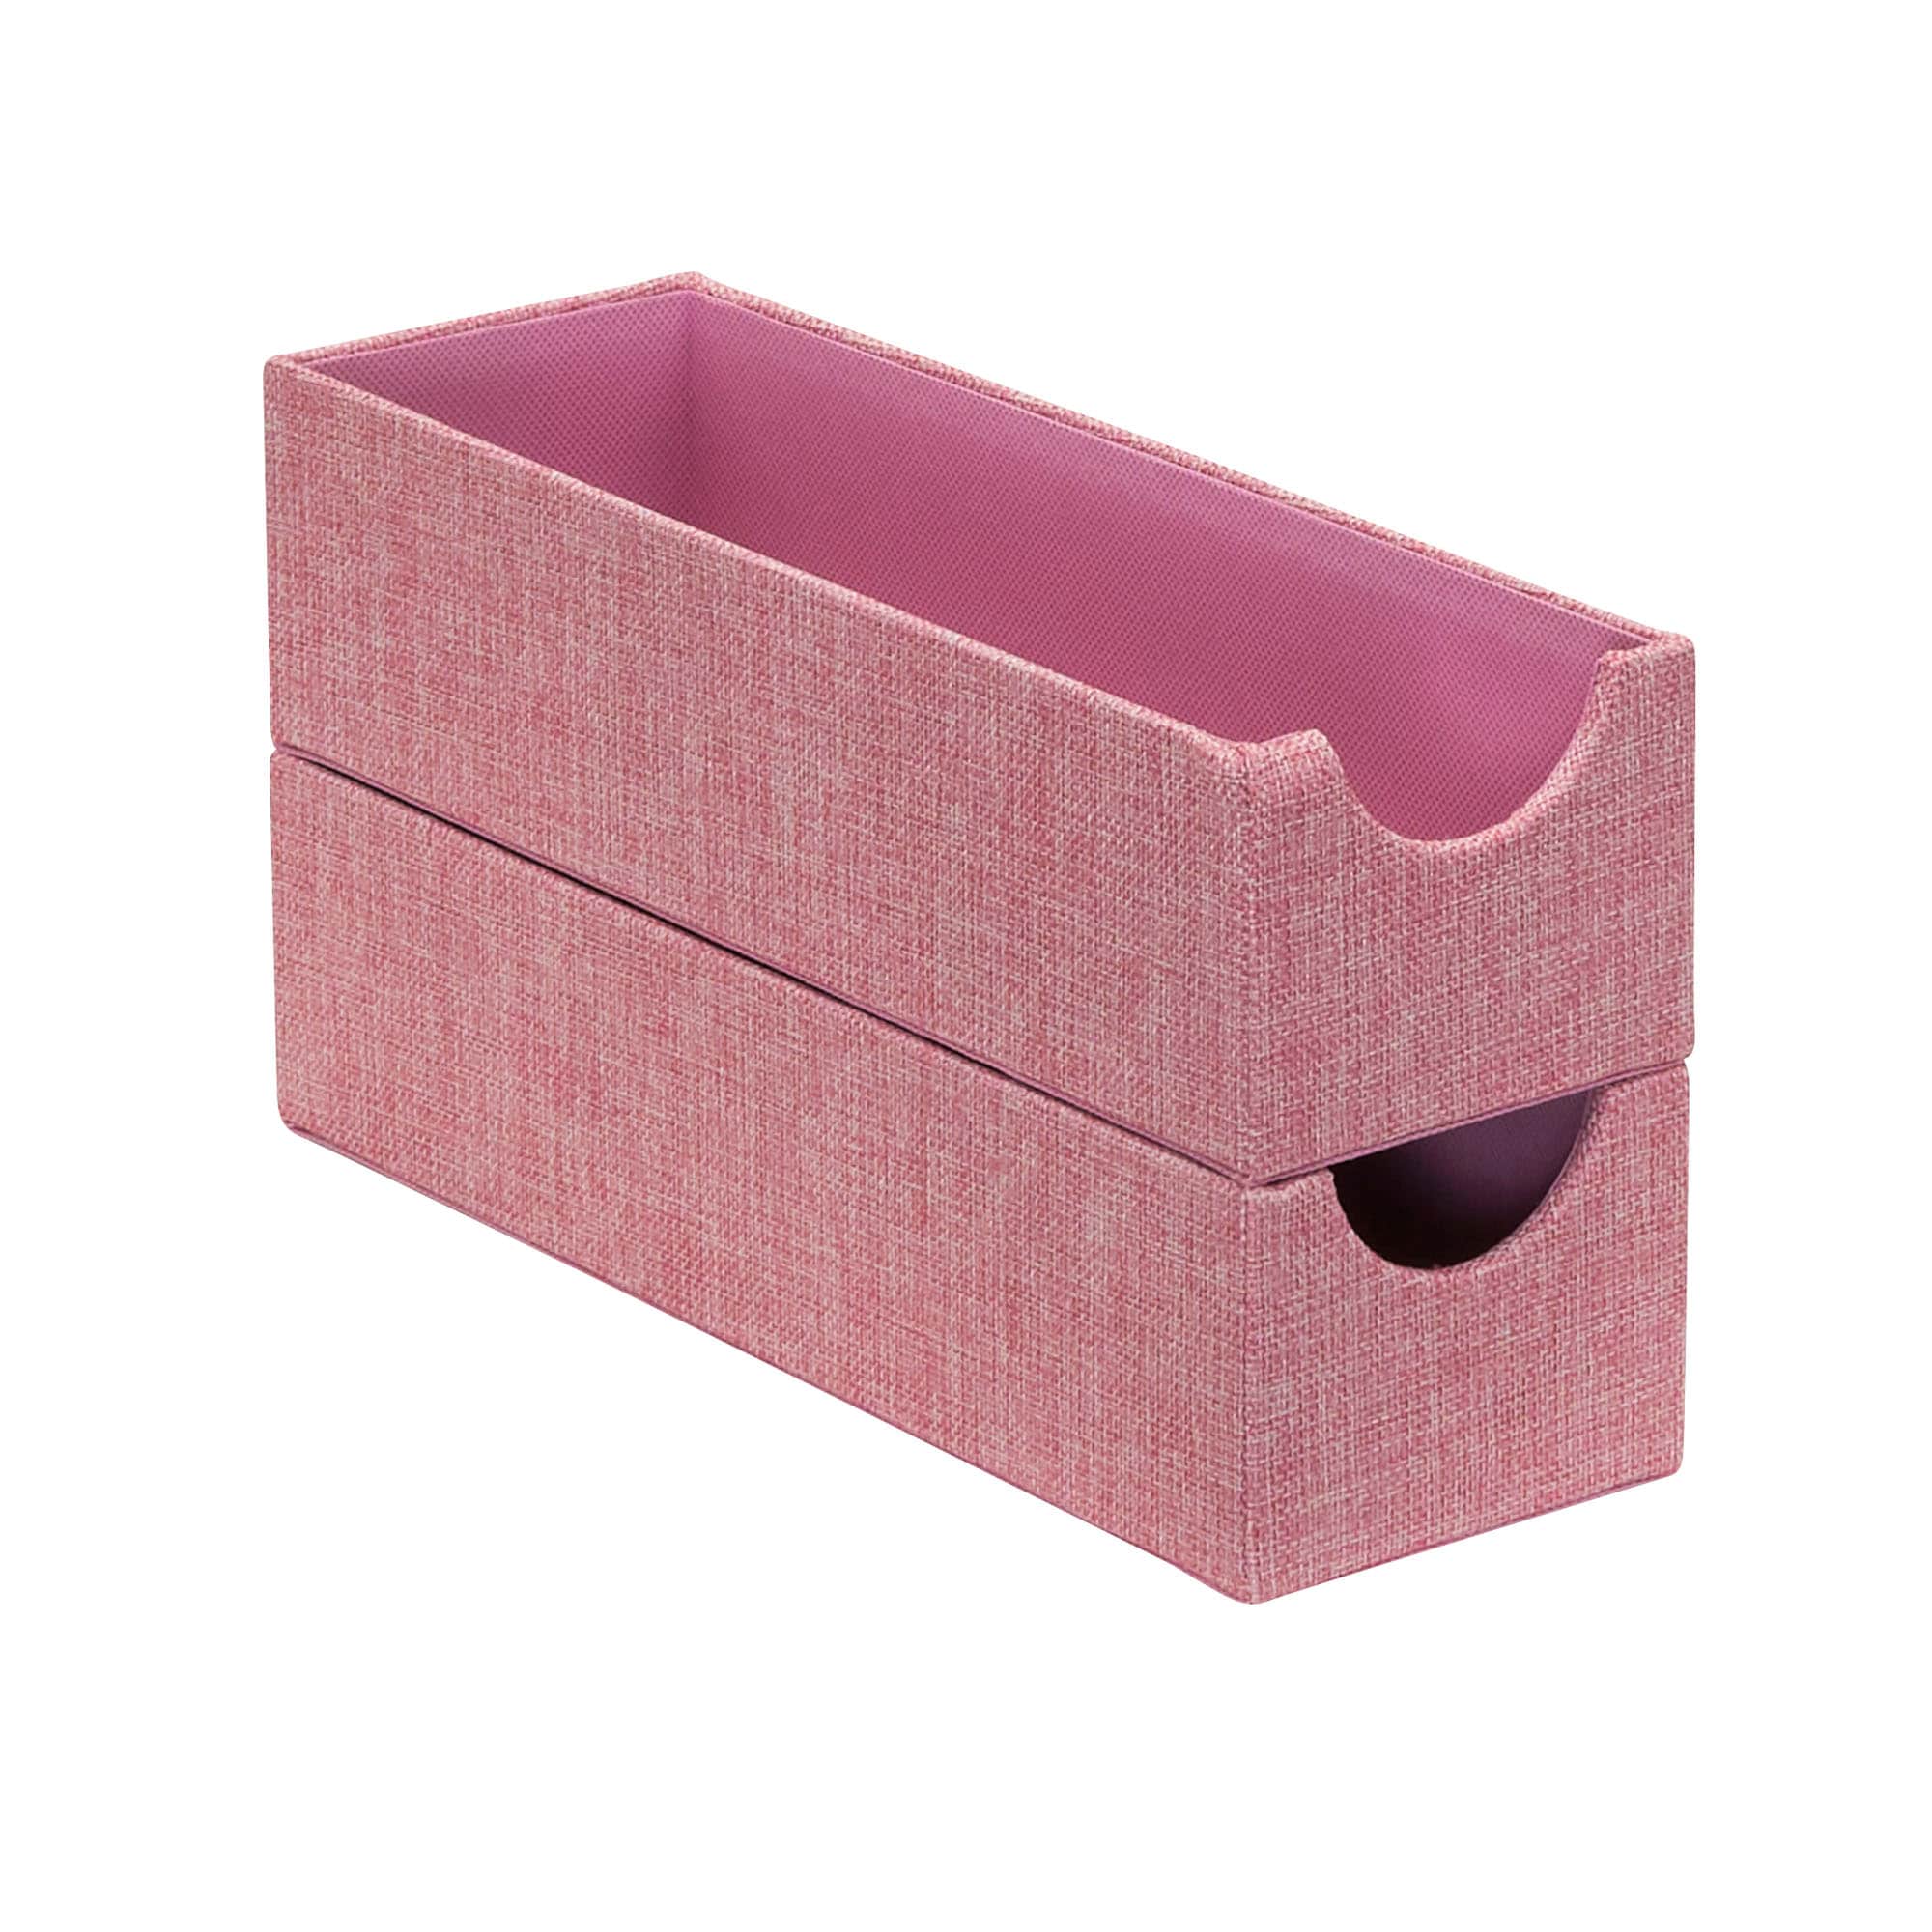 Pink Storage Bins & Baskets at